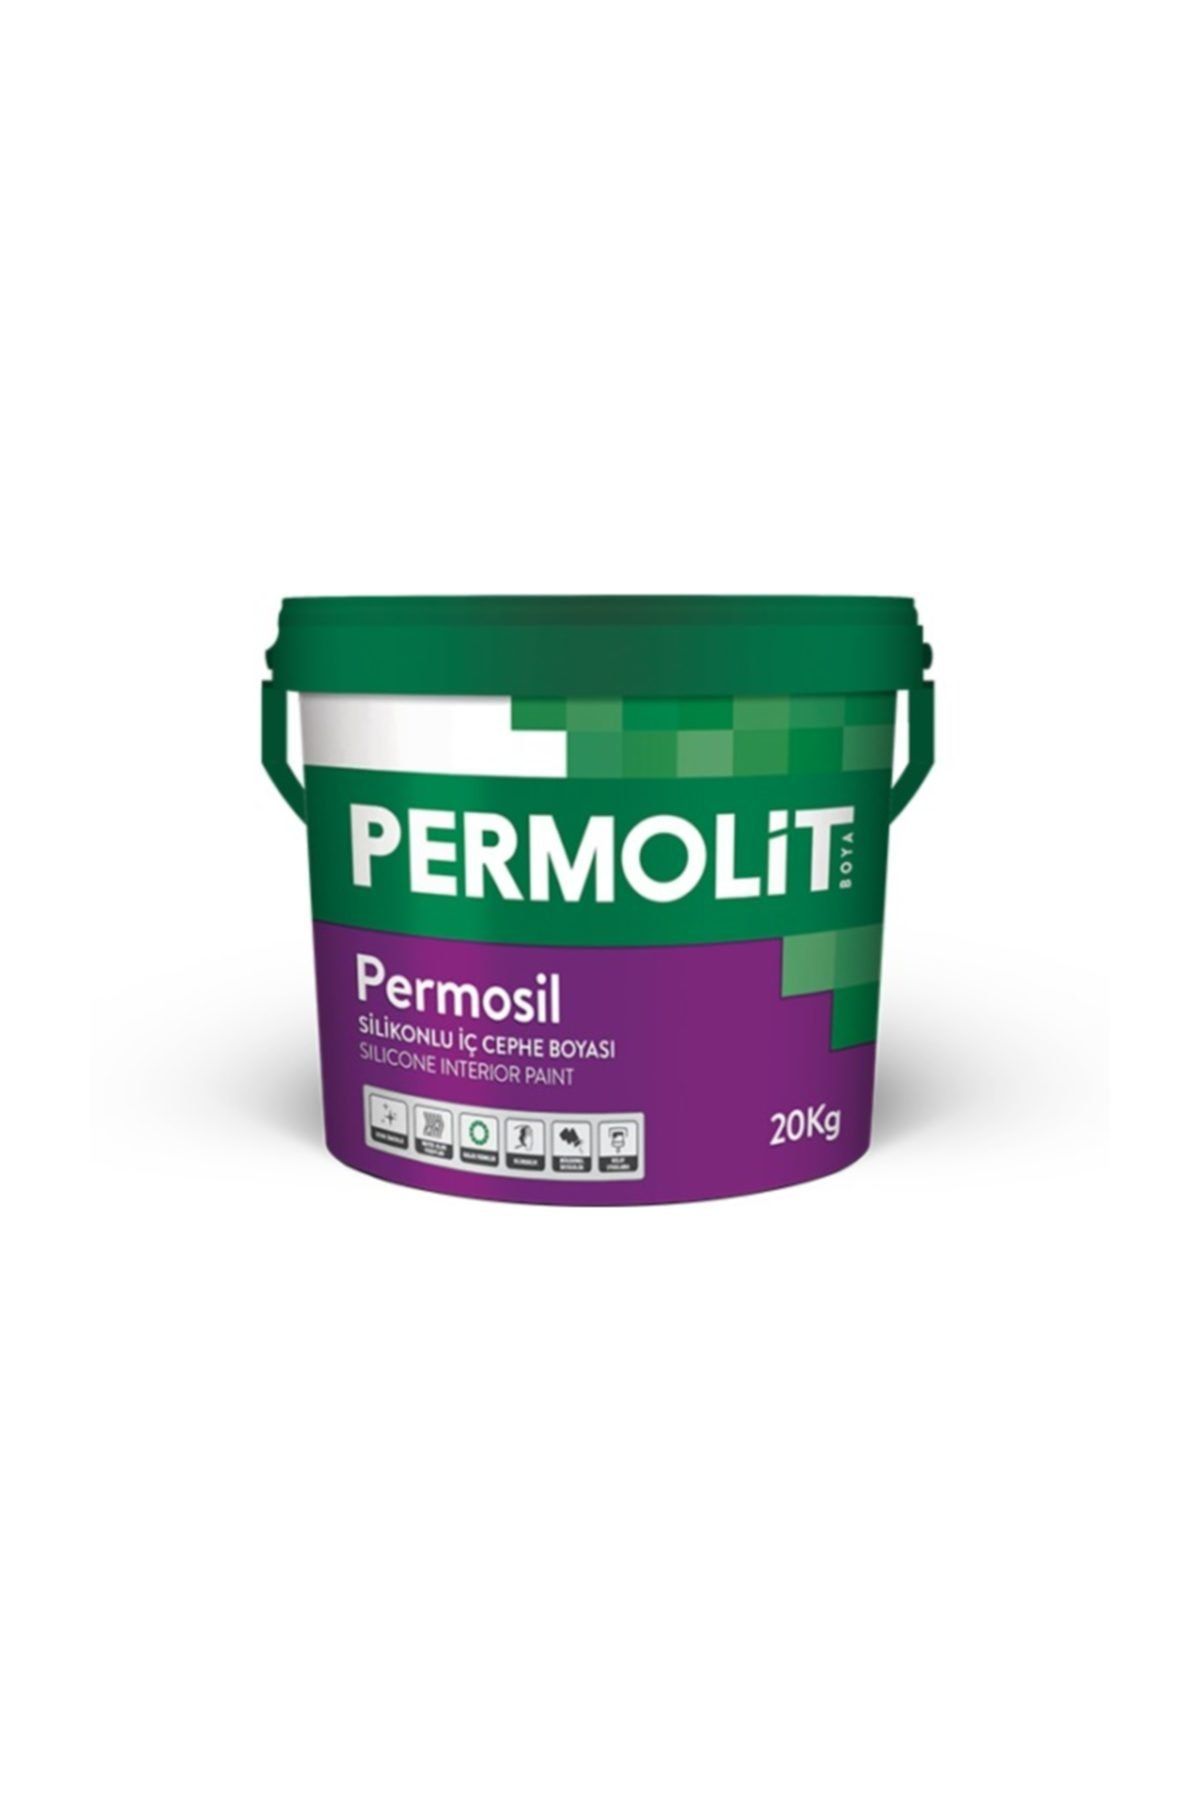 Permolit Permosil Silikonlu Iç Cephe Boyası 20 Kg 1087 Kırık Beyaz